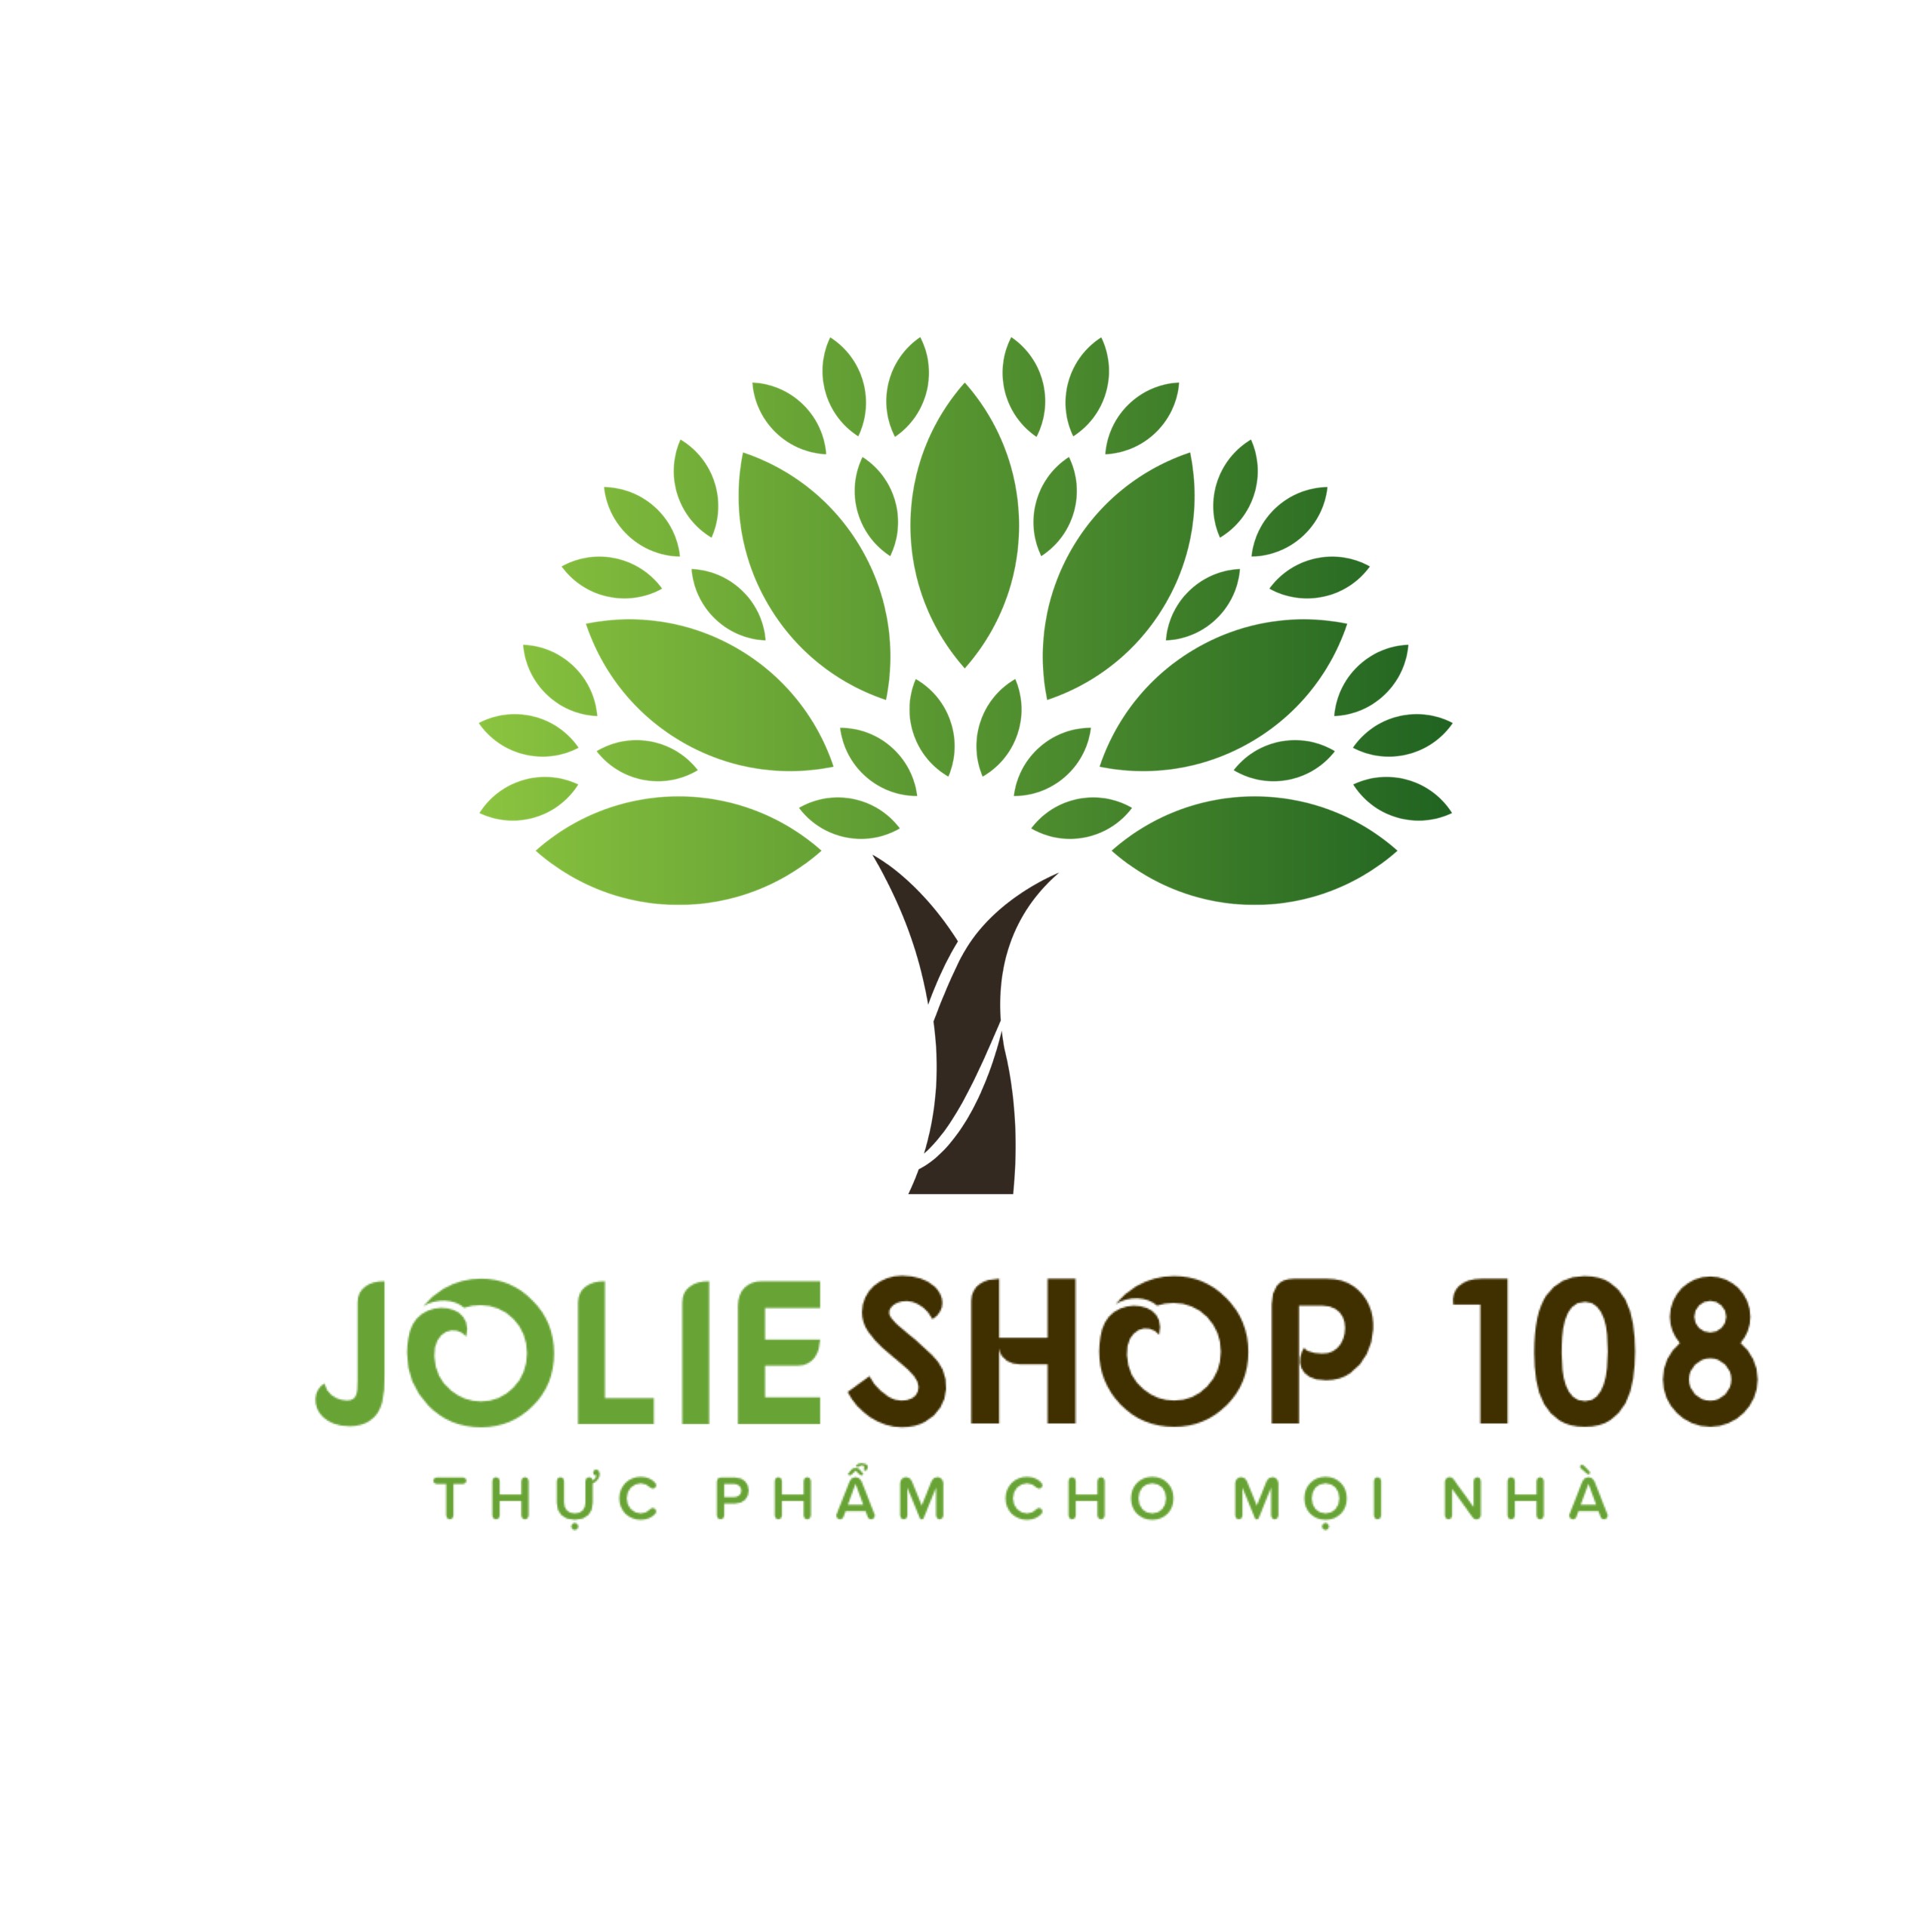 Joile shop